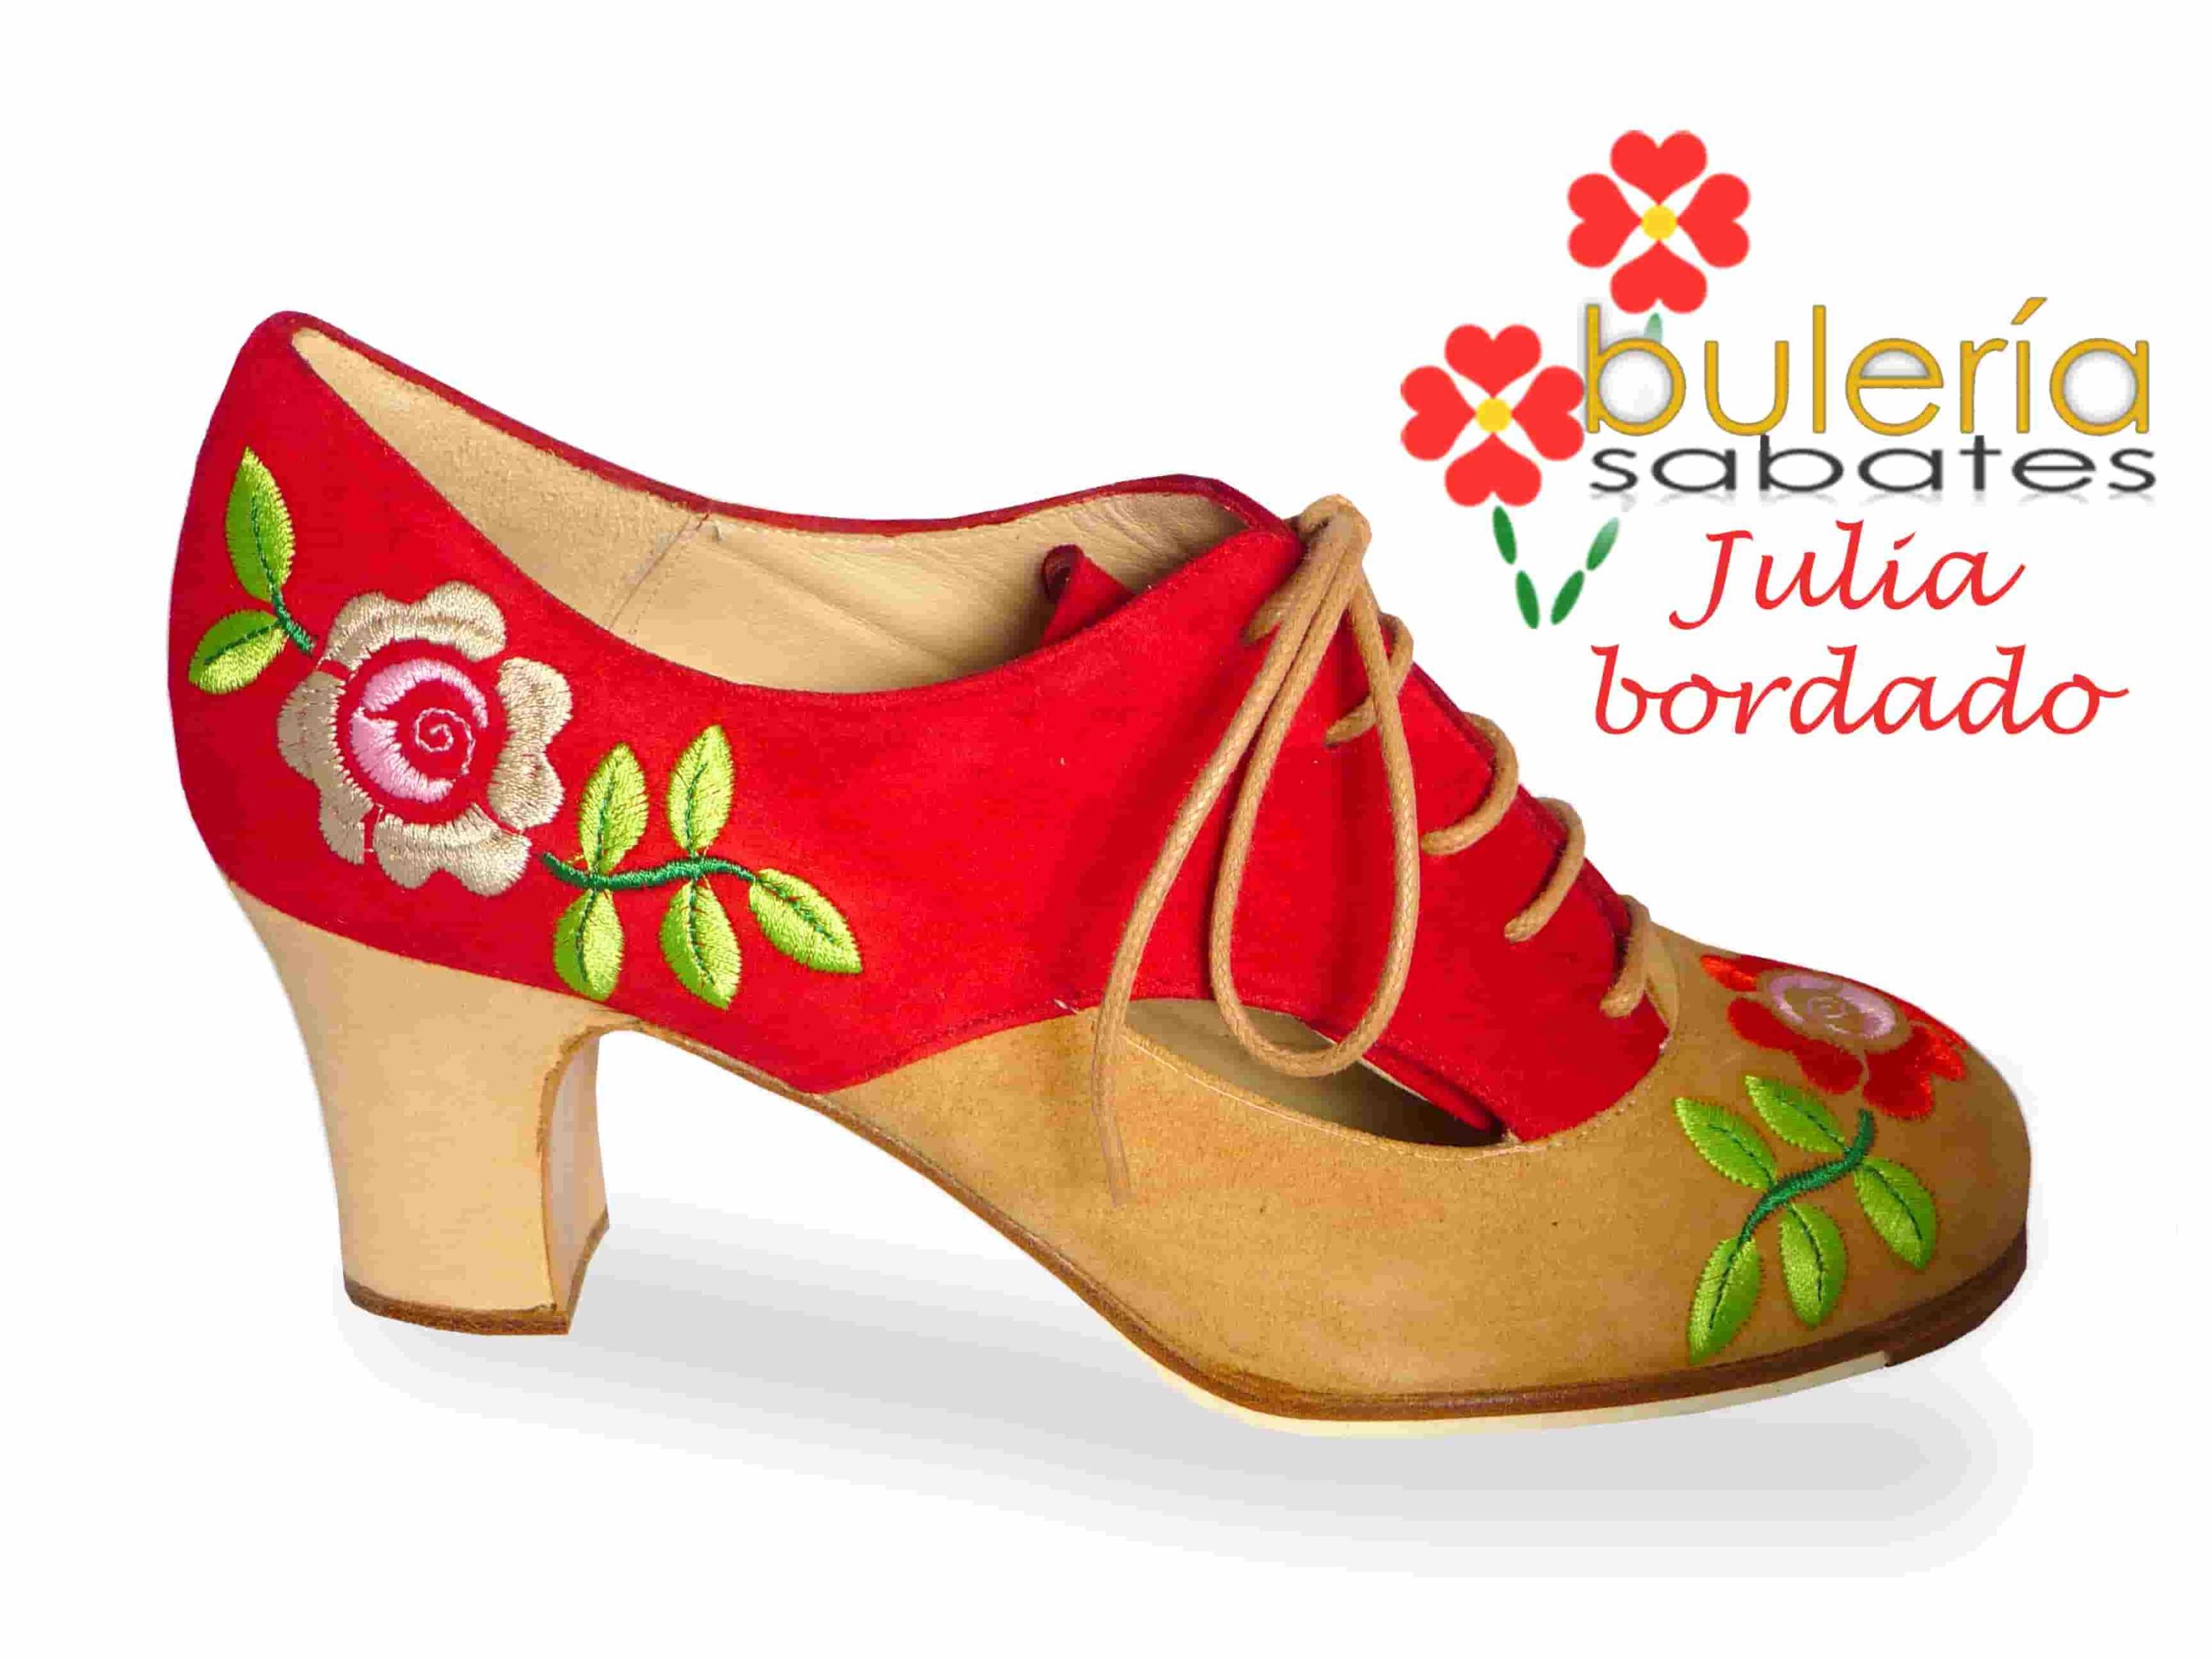 Zapatos de Flamenco Bulería Sabates - Blog El Rocio - El Rocío